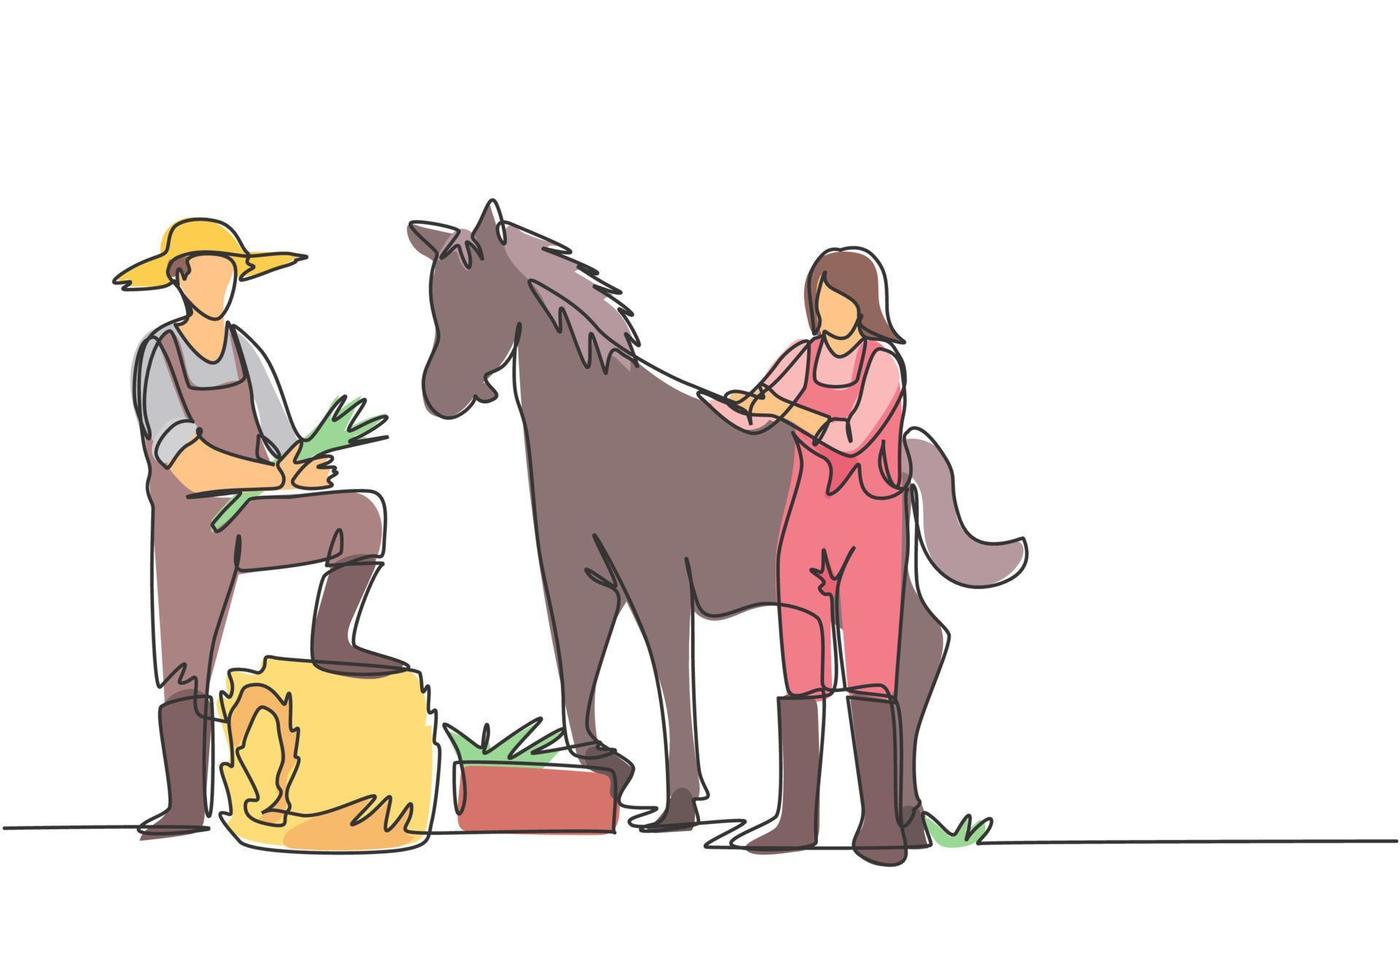 Um único desenho a linha de um fazendeiro pisou com um dos pés no feno enrolado quando estava prestes a alimentar o cavalo. uma fêmea ajuda a acariciar o cavalo. ilustração em vetor gráfico de desenho de uma linha.